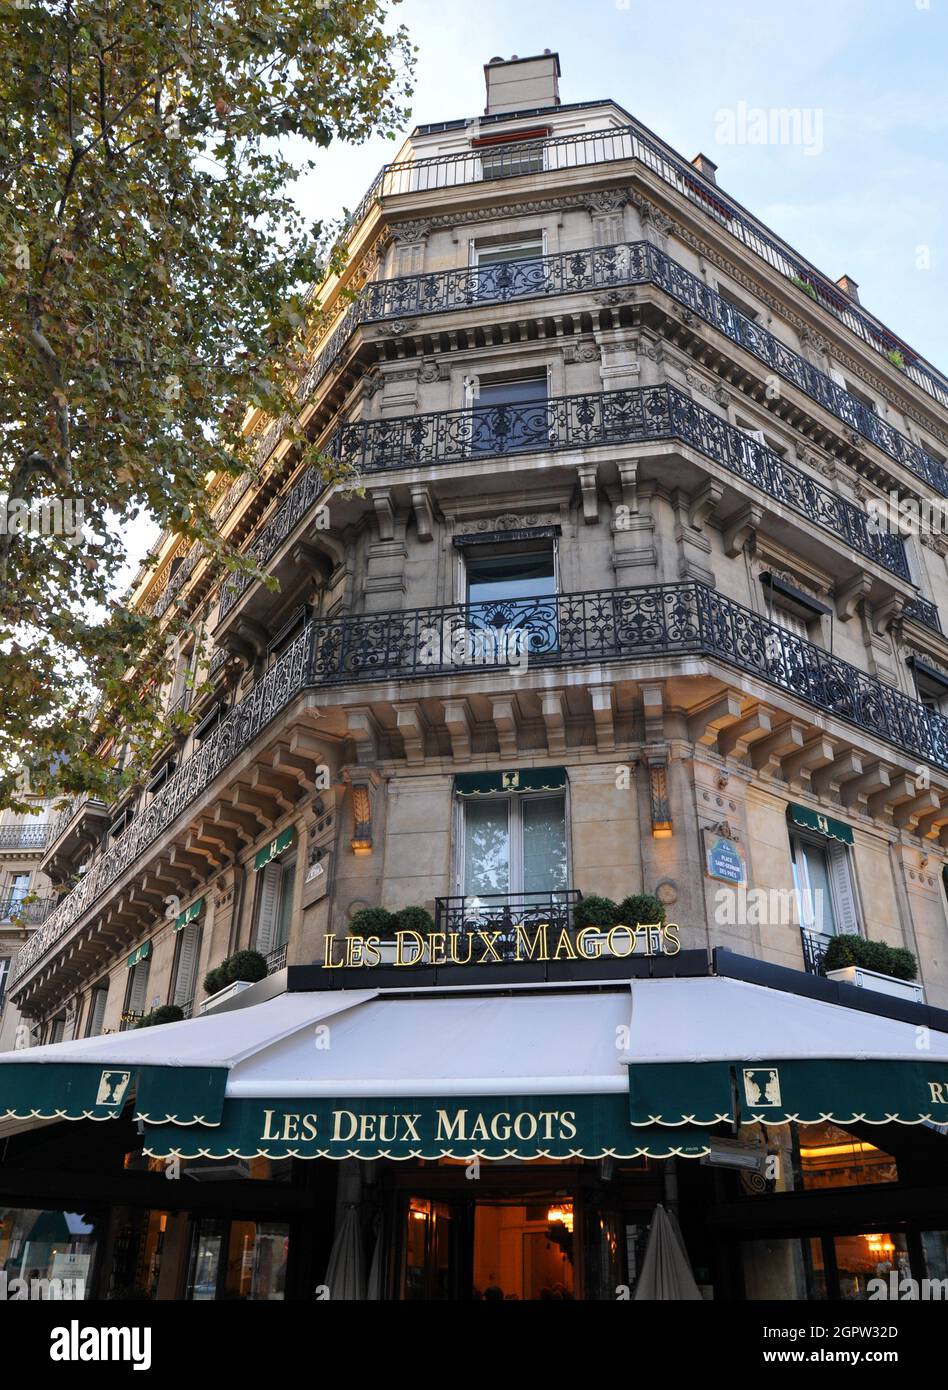 Das Gebäude, in dem Les Deux Magots untergebracht ist, ein berühmtes Café und beliebtes Touristenziel im Viertel Saint-Germain-des-Prés von Paris. Stockfoto